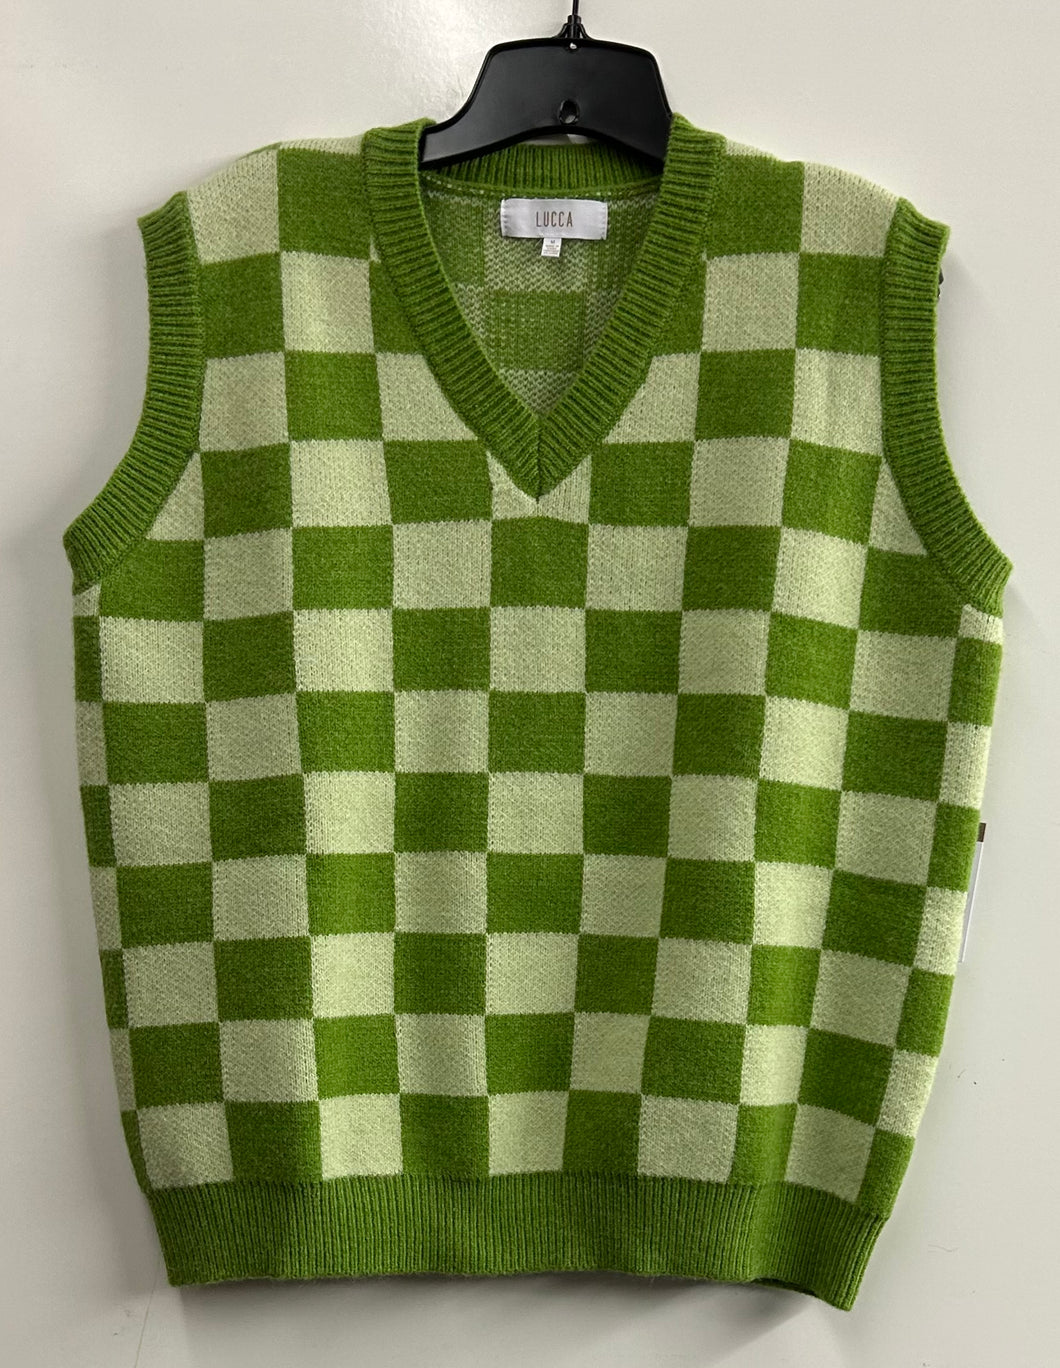 Lucca, sweater vest, size Medium